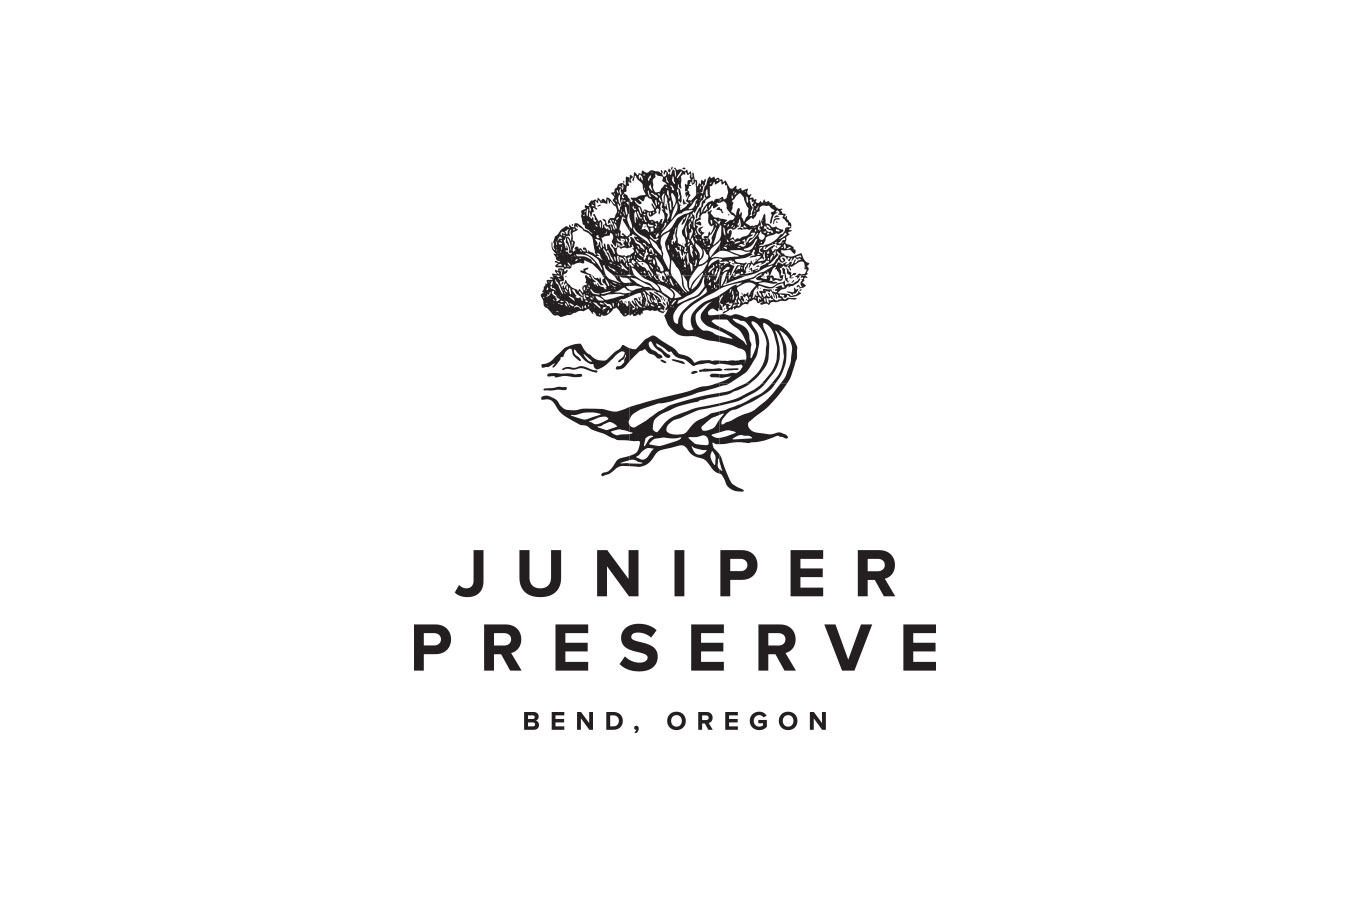 Pronghorn Club and Resort Rebrands as Juniper Preserve